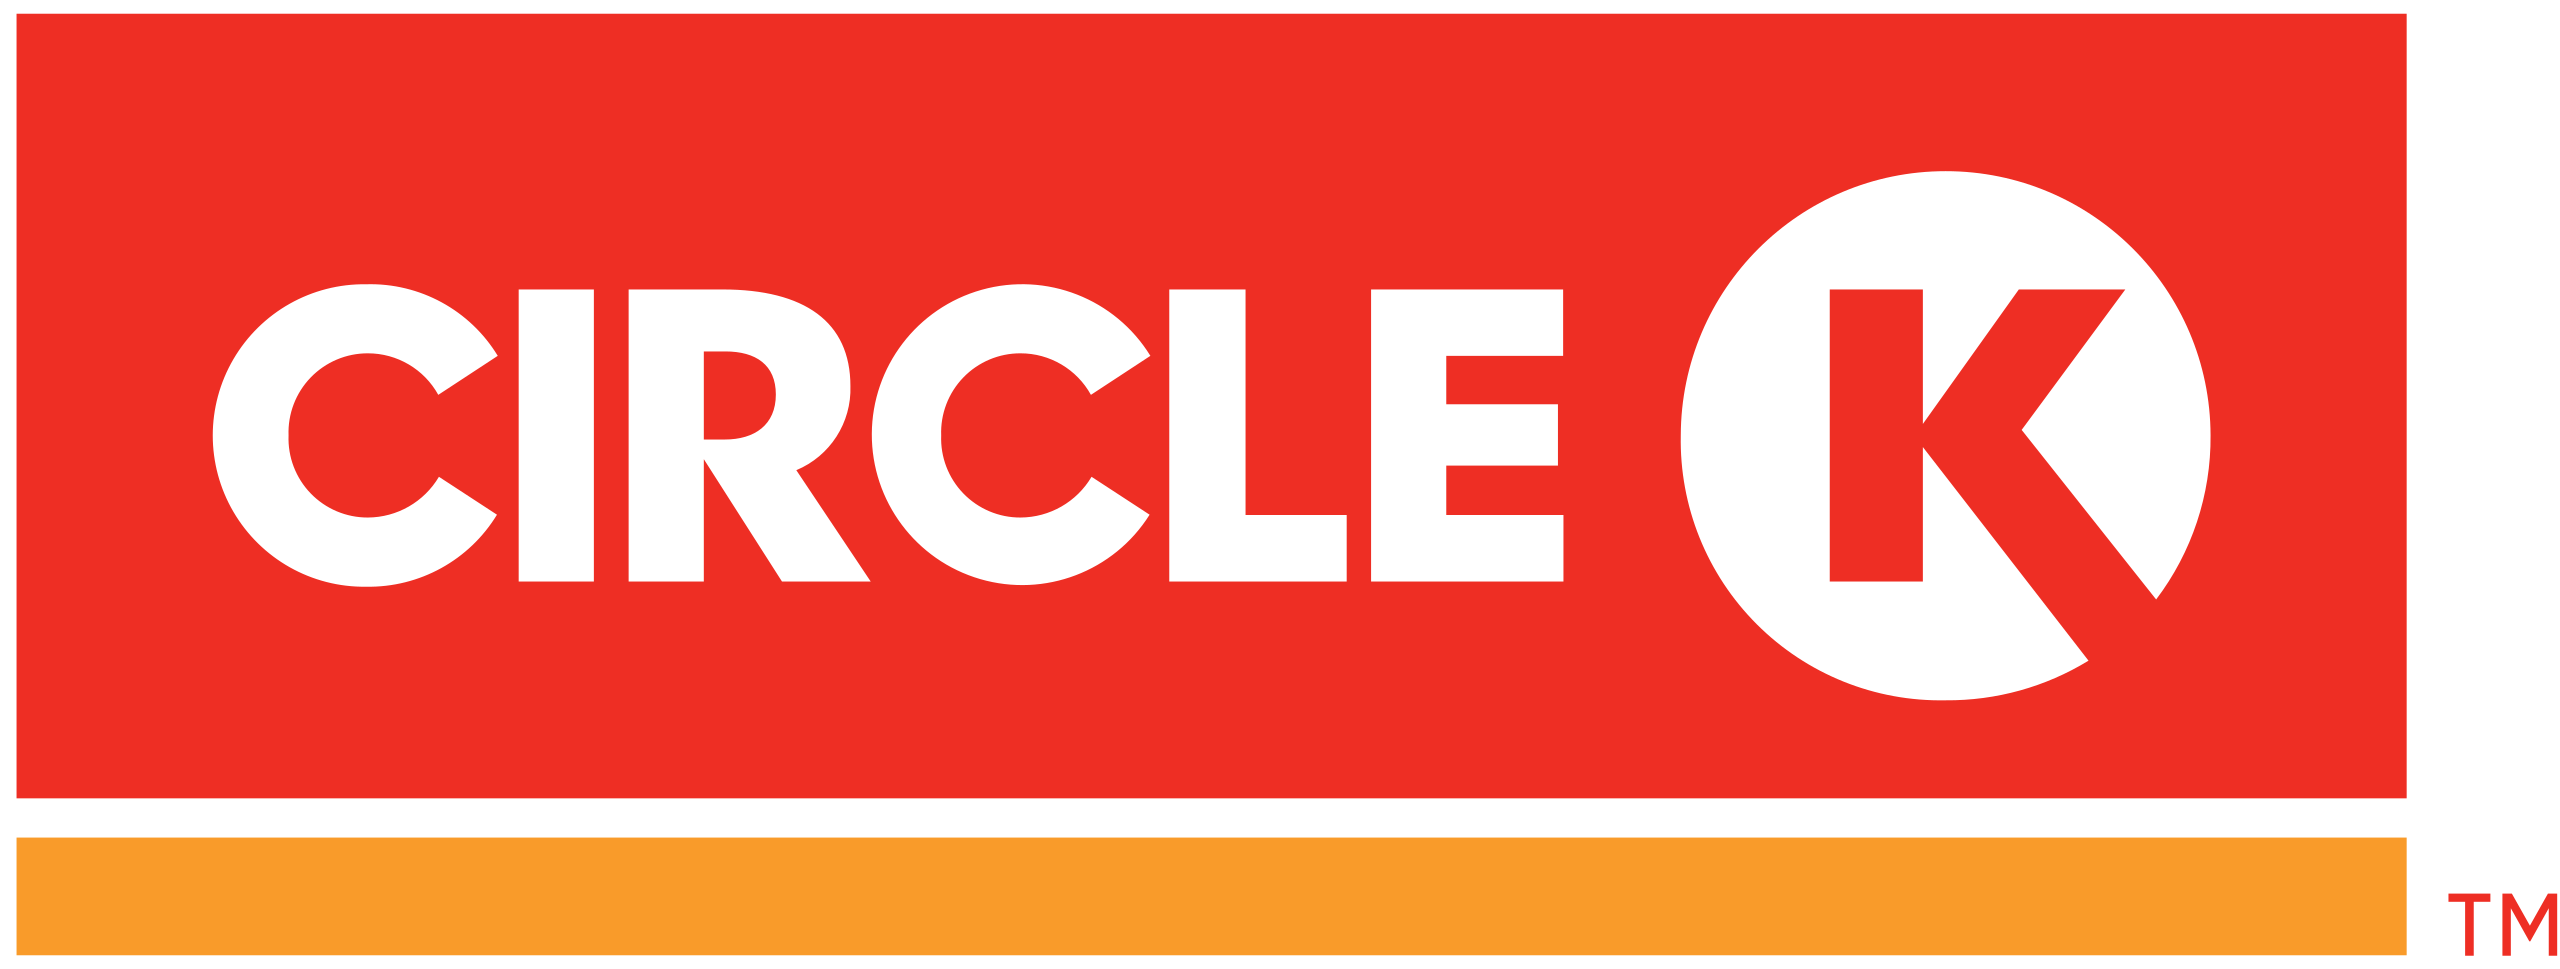 Circle K có hơn 300 cửa hàng; giám sát viên phải kiểm tra chất lượng cửa hàng thường xuyên. Tuy nhiên, các công việc đều được thực hiện bằng giấy bút, dẫn đến thiếu sót trong việc quản lý thông tin.